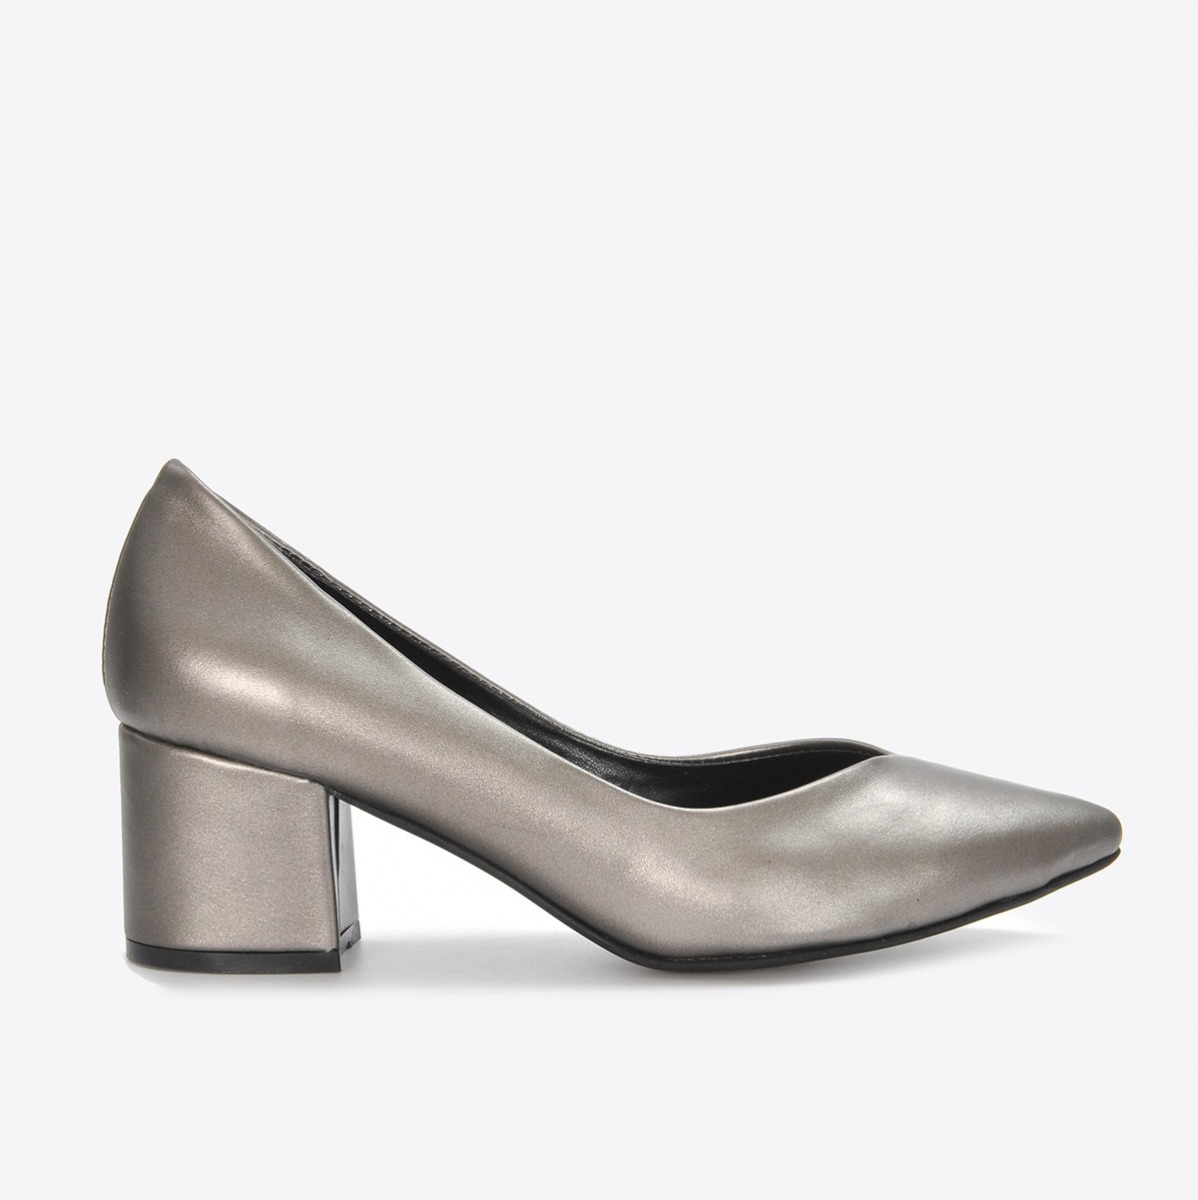 Flo Kadın Platin Klasik Topuklu Ayakkabı VZN21-040Y. 2